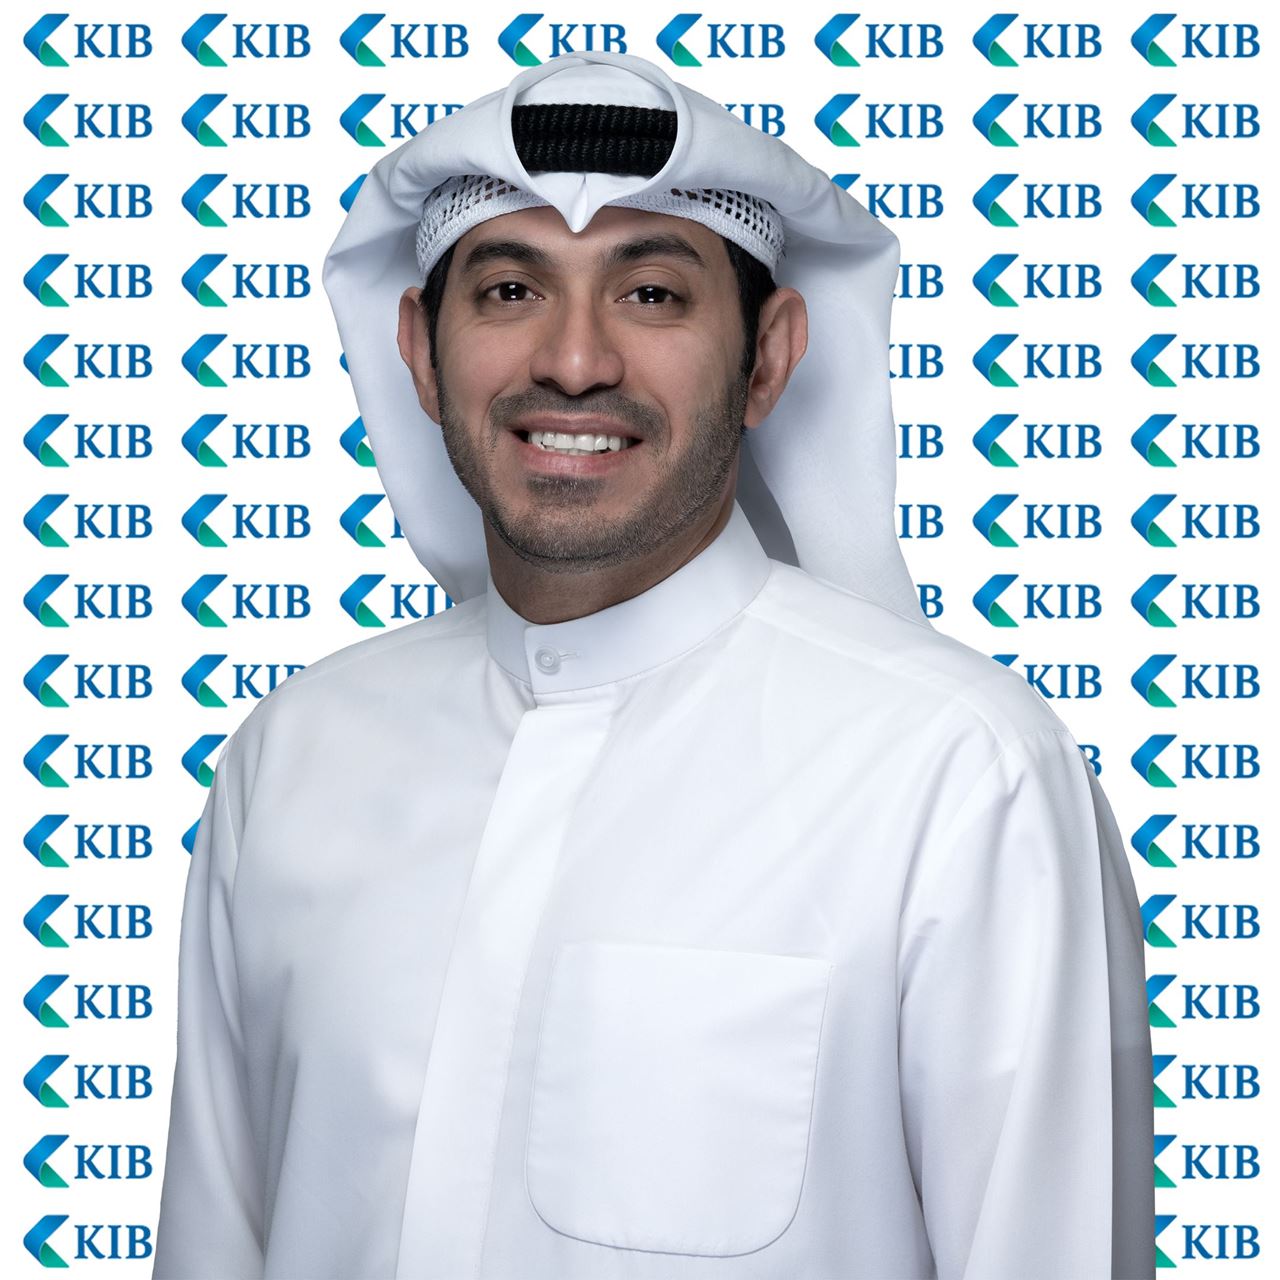 رئيس وحدة الشكاوى وحماية العملاء في KIB، حسين عبد الرحيم